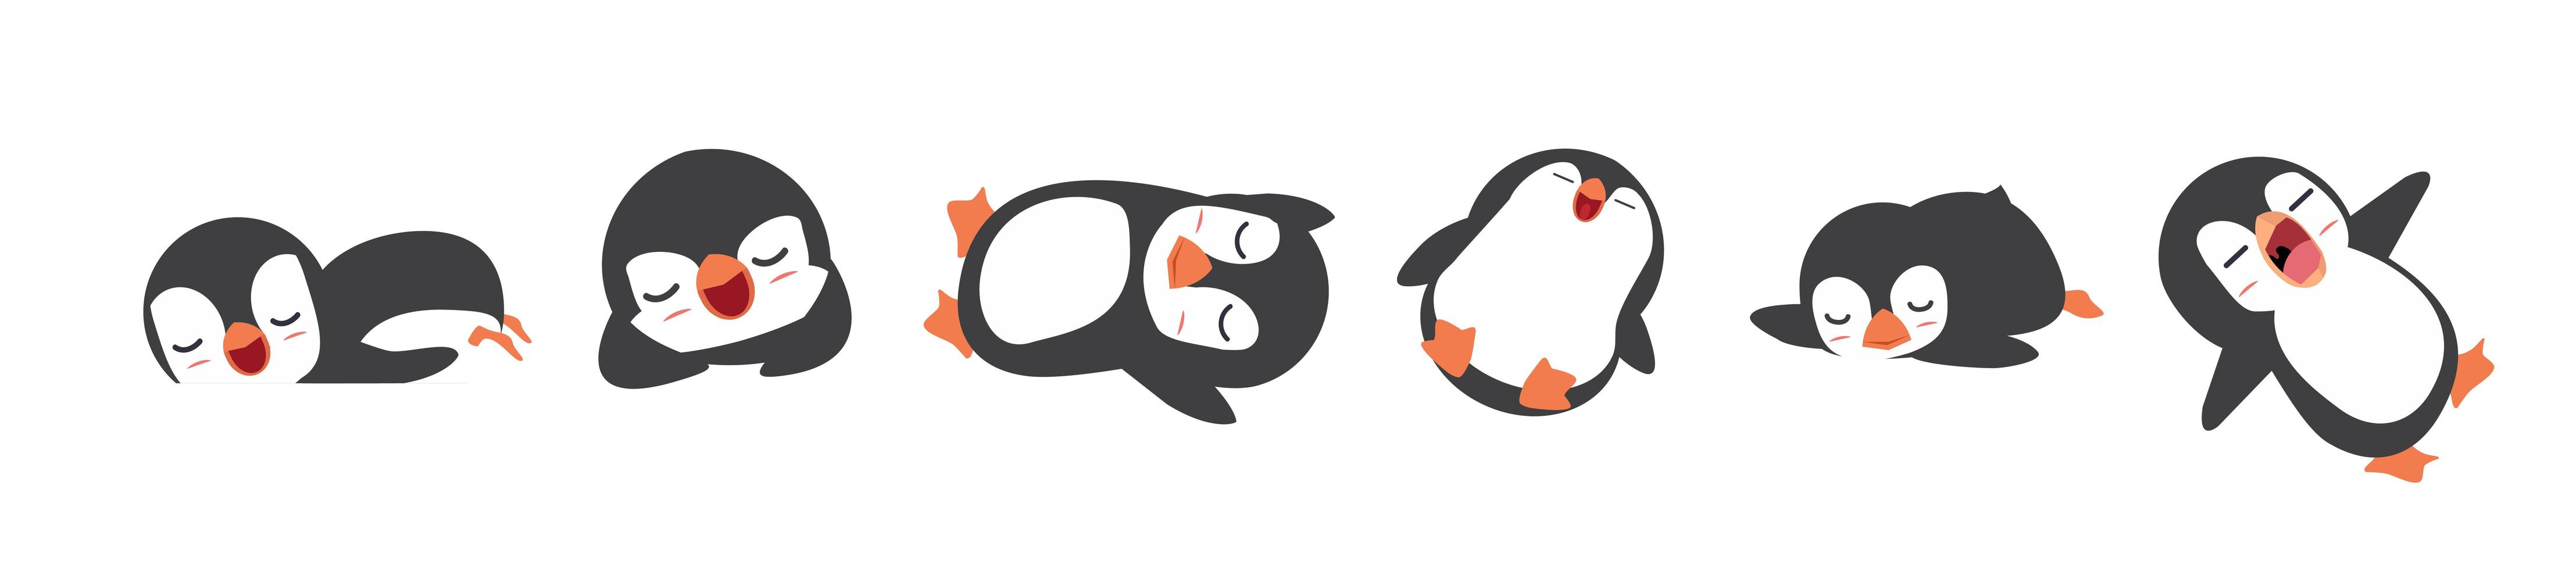 conjunto de dibujos animados de pingüinos soñolientos vector